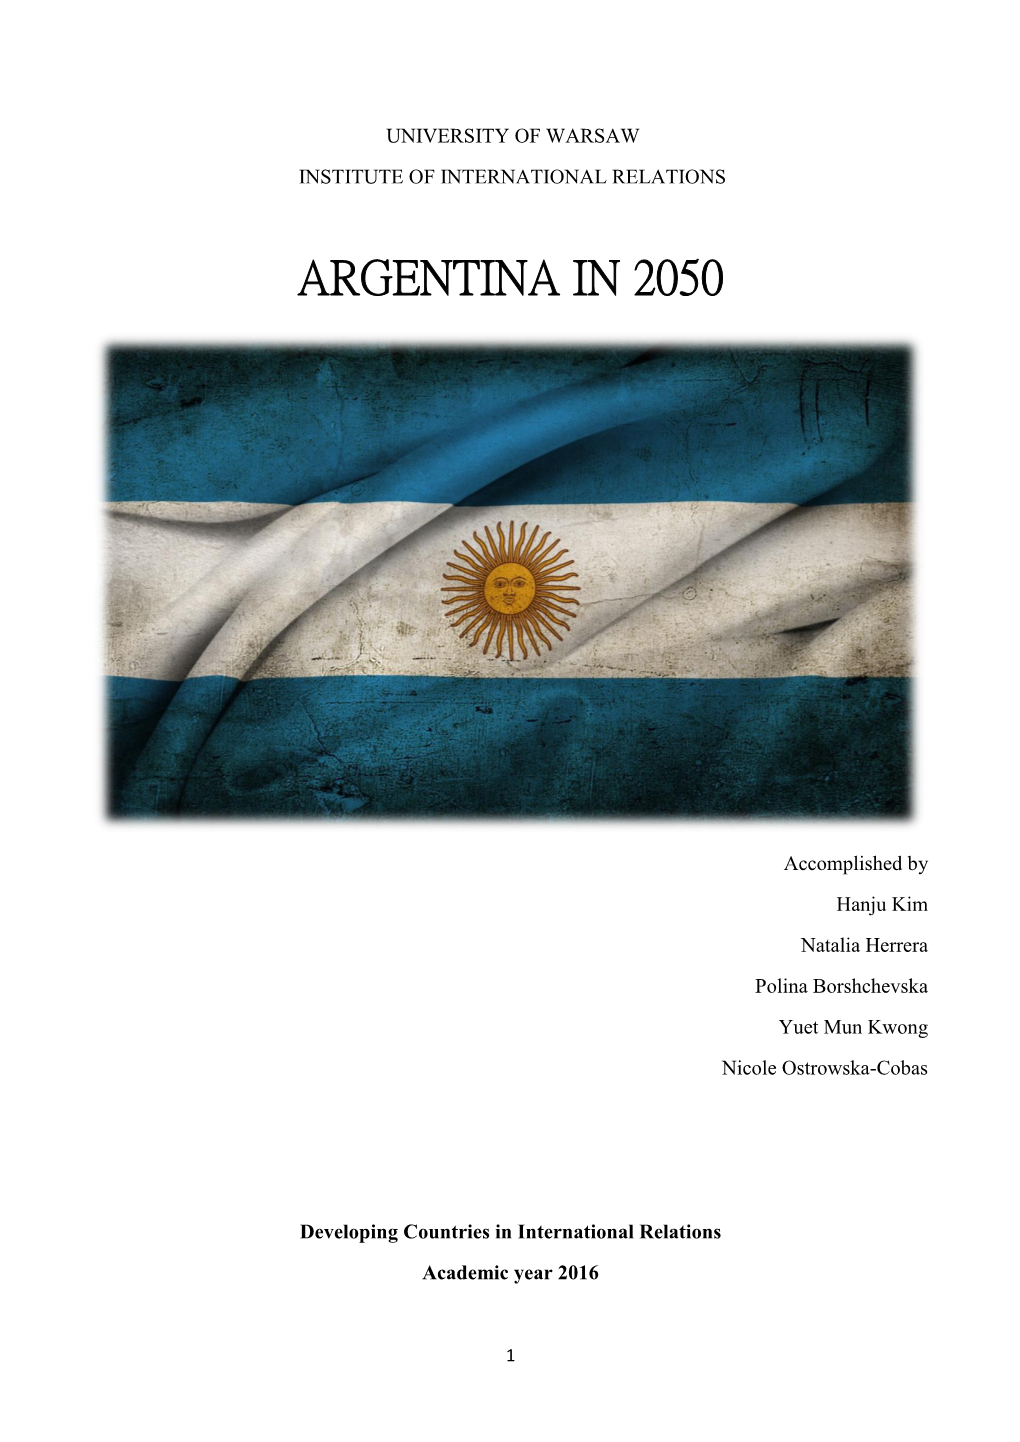 Argentina in 2050